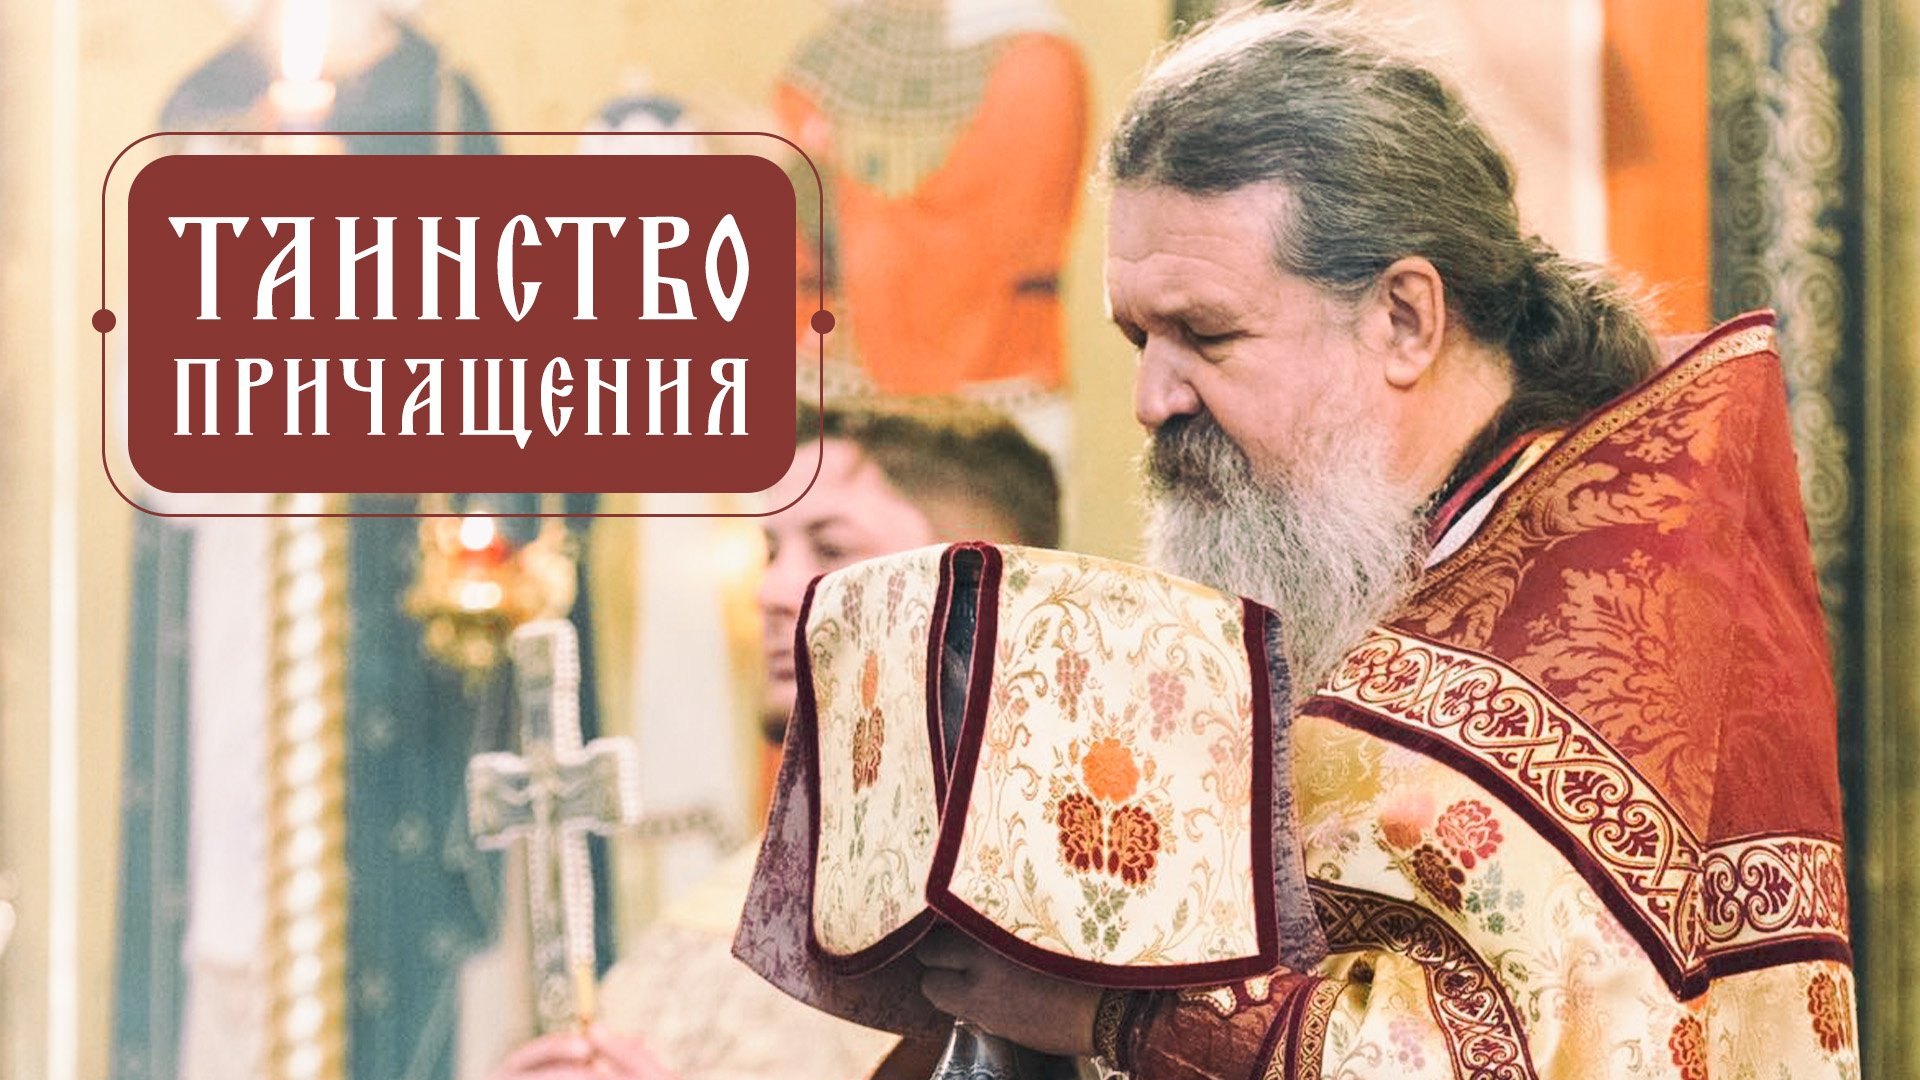 Причастие. Зачем, как происходит и что получаем? Таинства Православной Церкви.